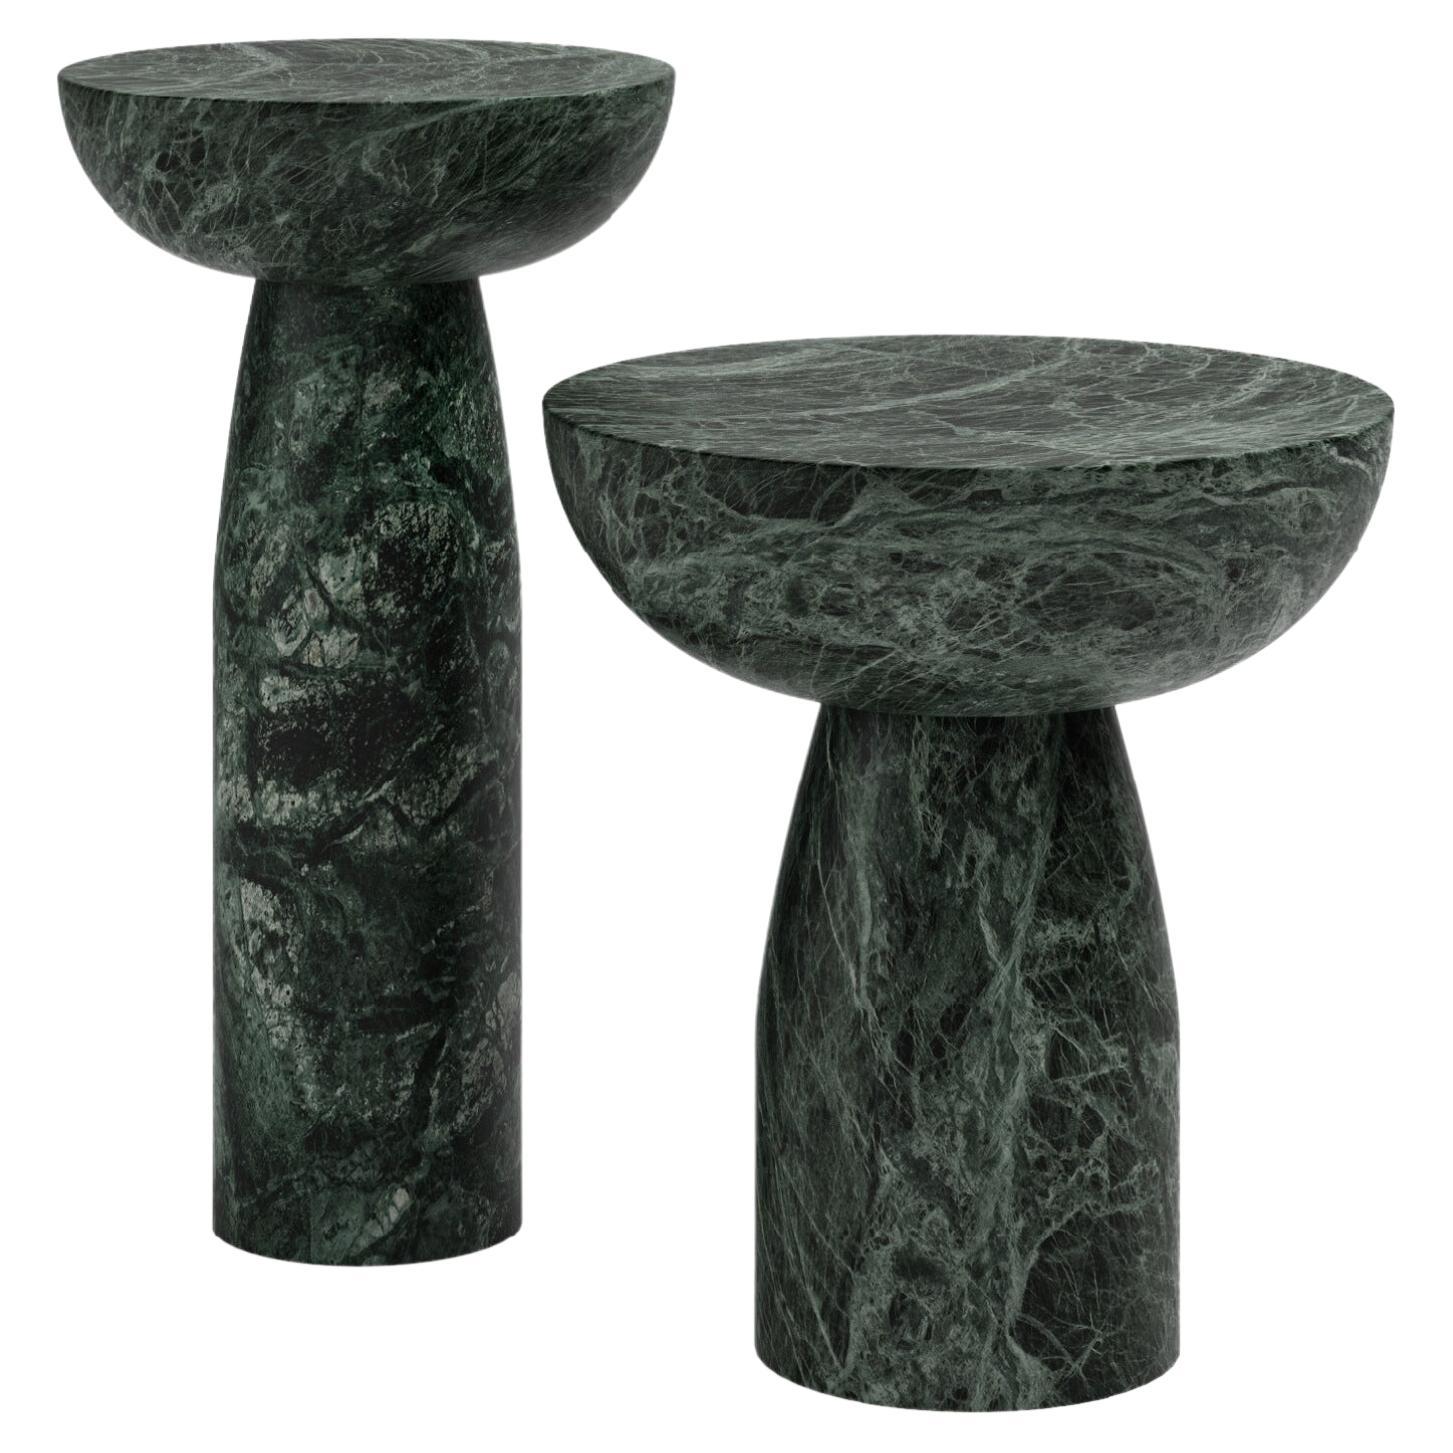 FORM(LA) Sfera Round Side Table 18”L x 18”W x 20”H Verde Guatemala Marble